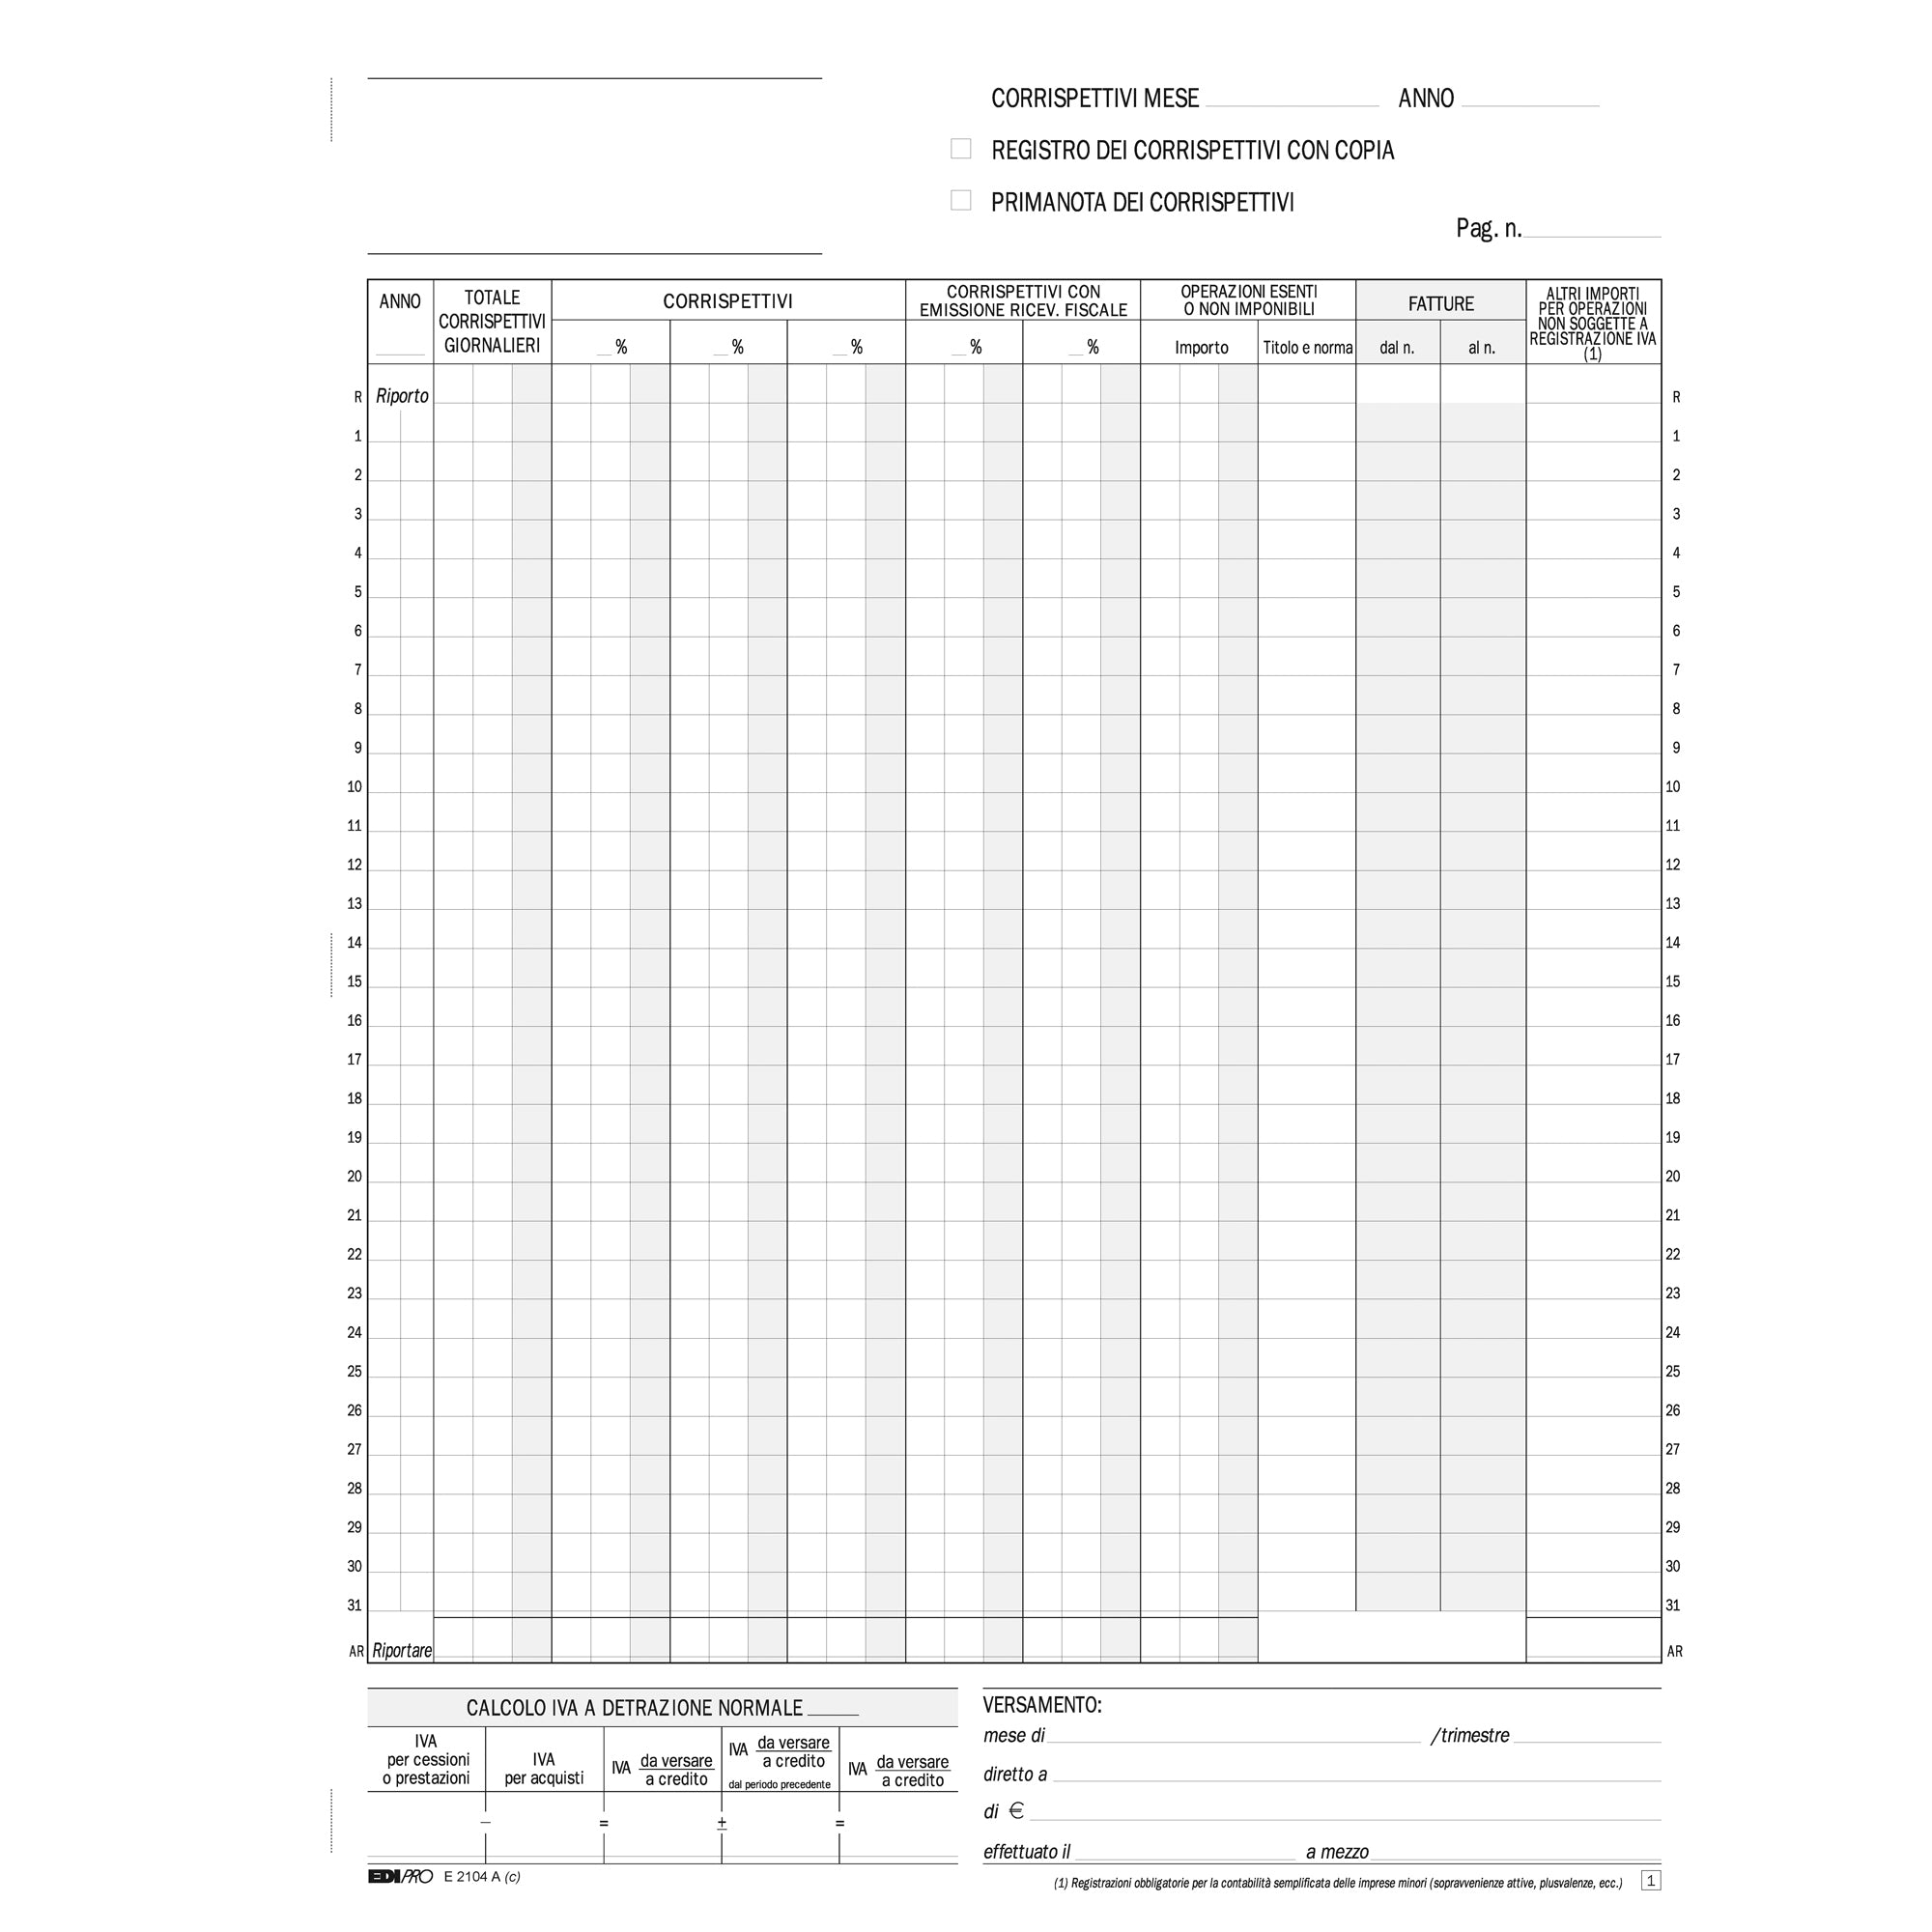 edipro-registro-prima-nota-iva-corrispettivi-29-7x23-13-13-fg-autoric-e2104a